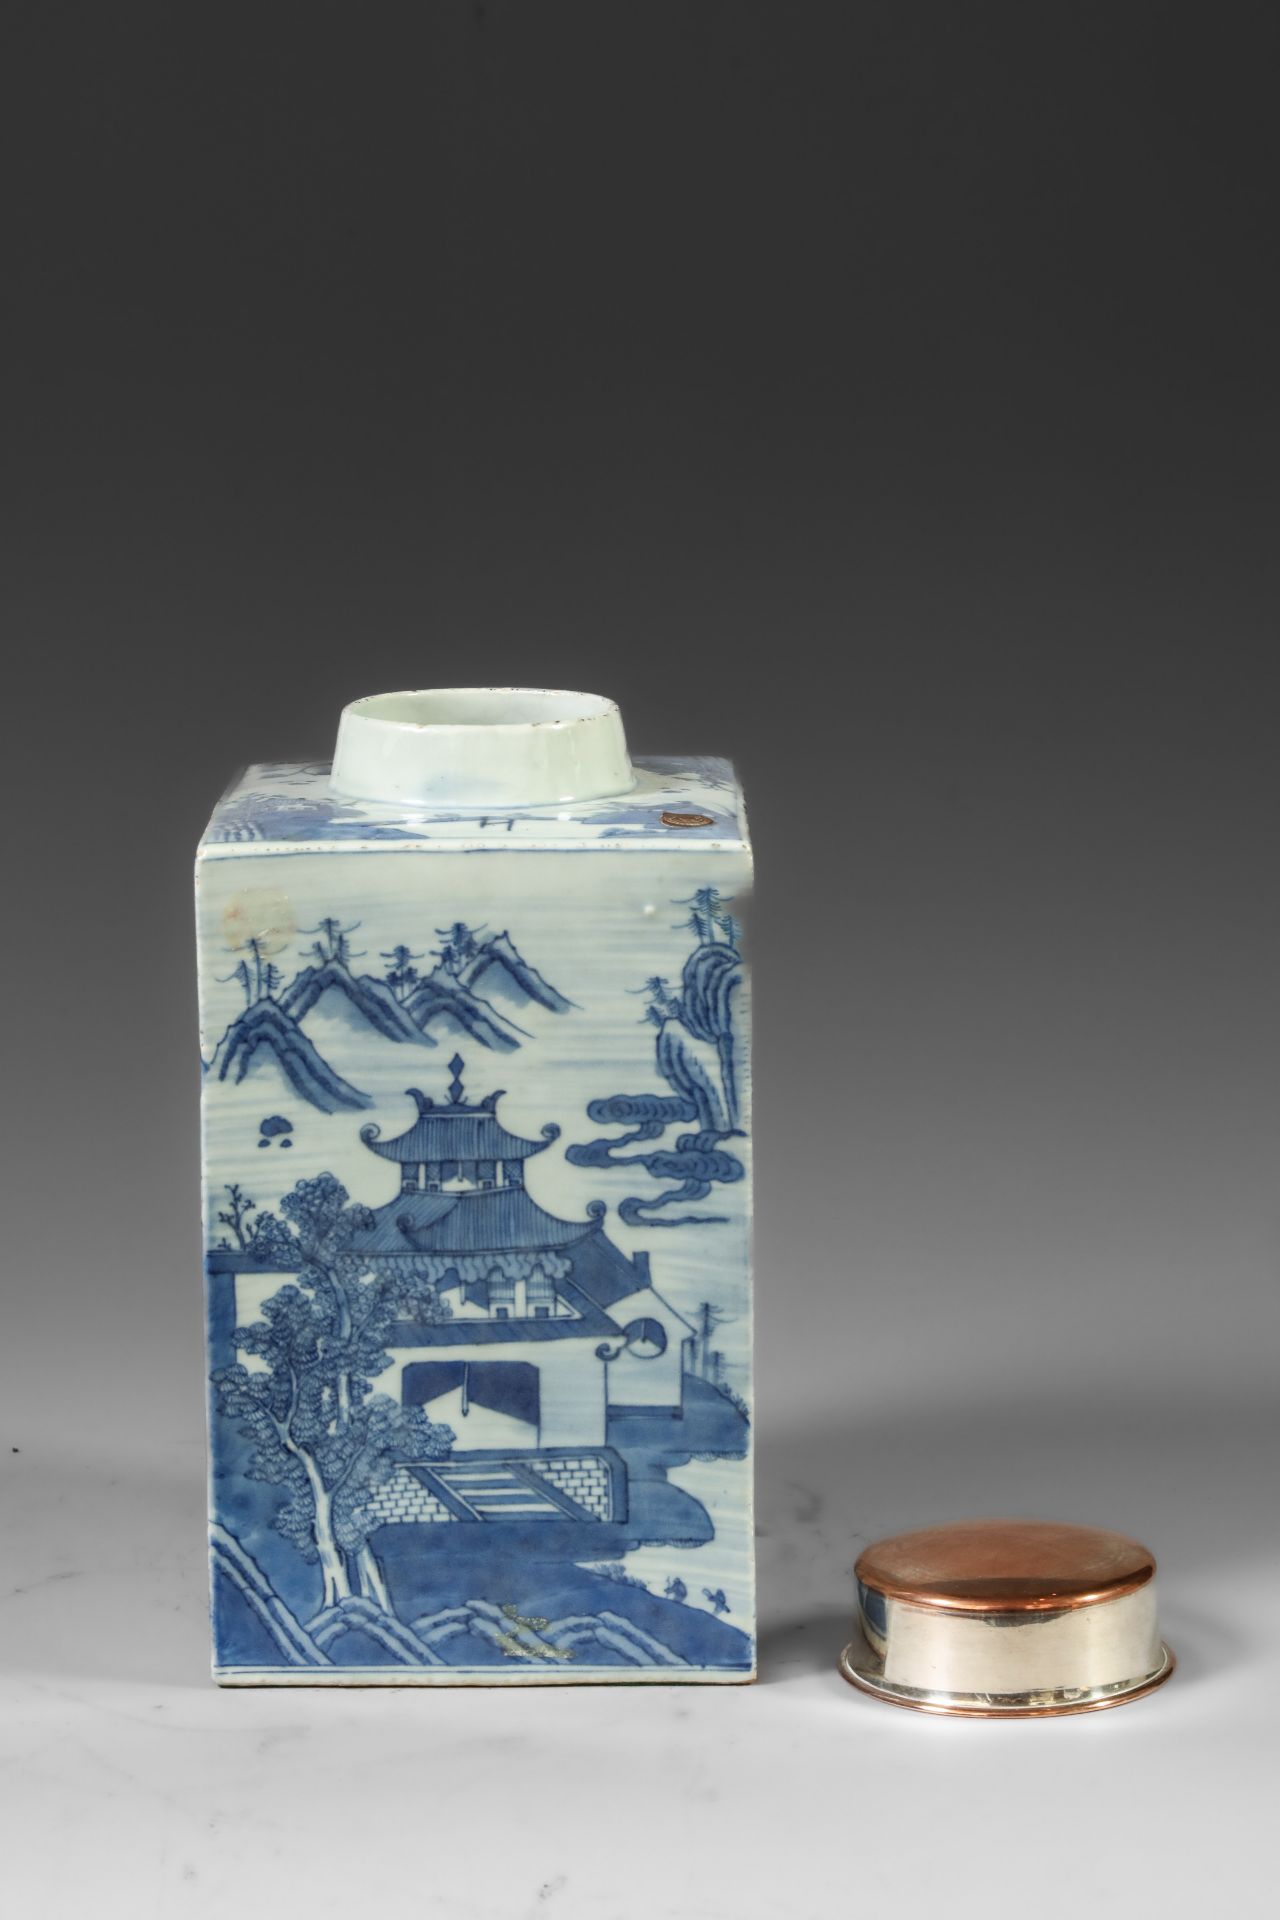 Suite de neuf pots à thé quadrangulaire en porcelaine blanche décoré en bleu sous couverte de - Image 2 of 47